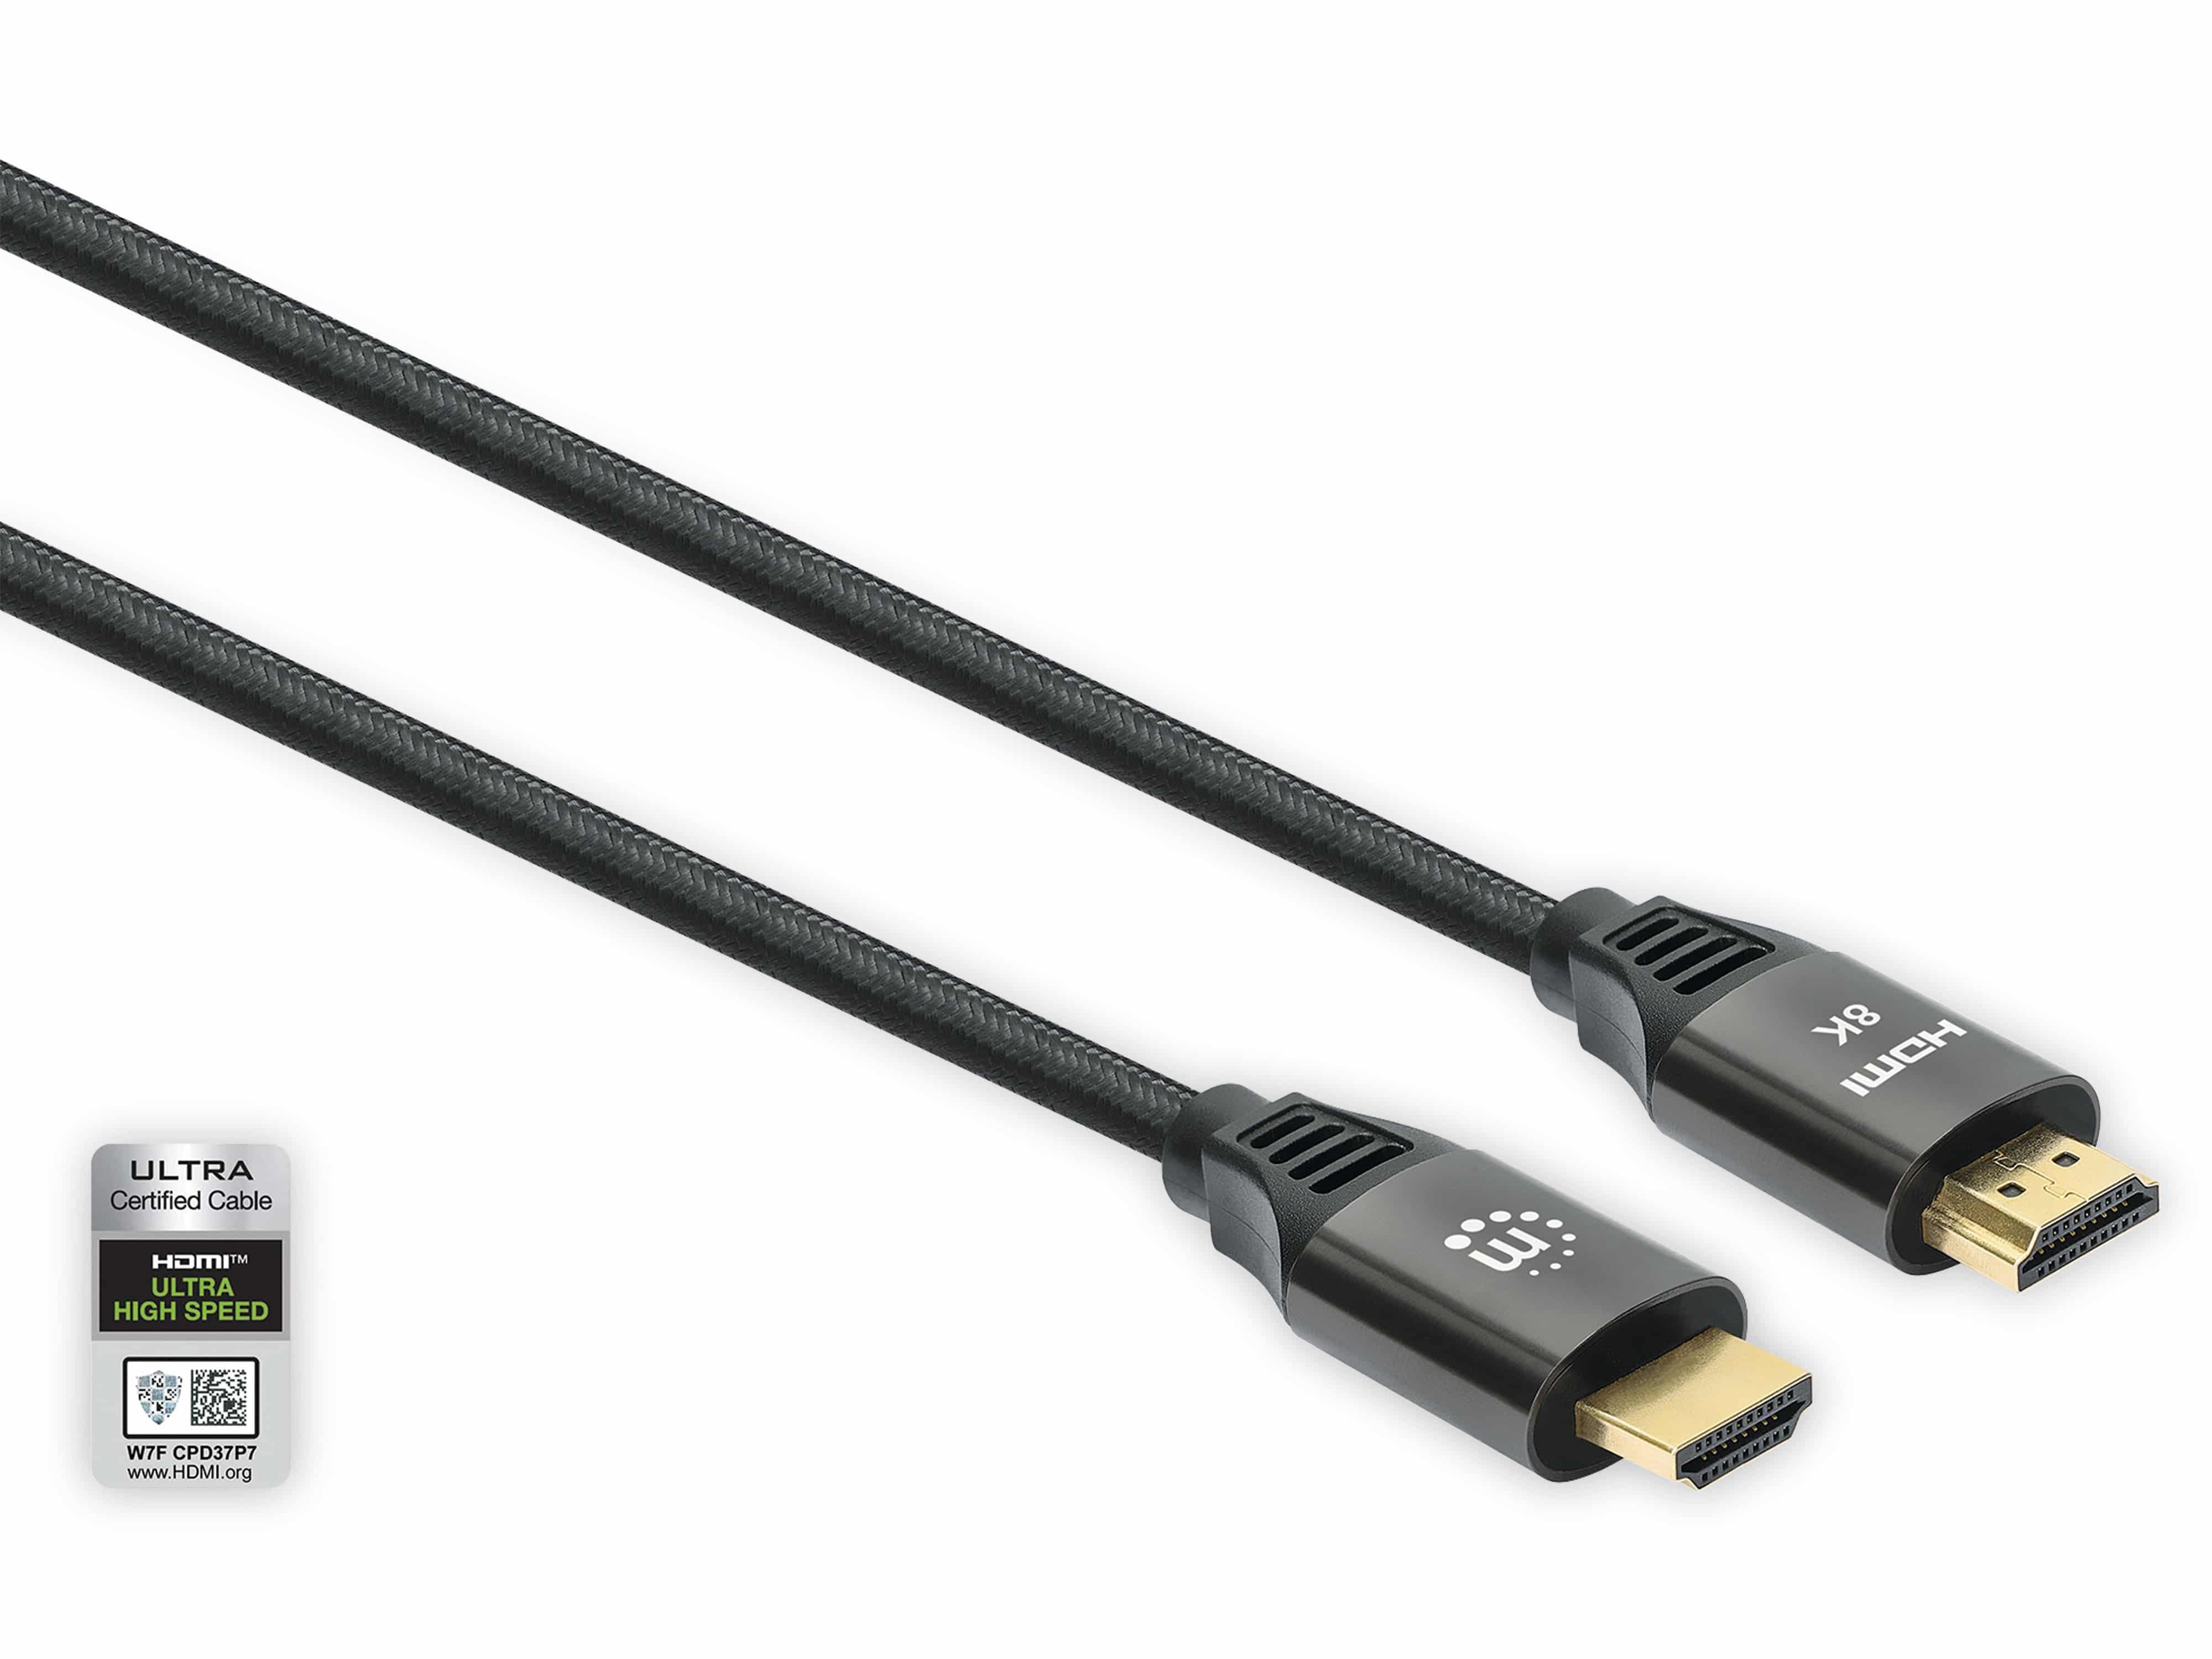 MANHATTAN Ultra HDMI-Kabel, 2 m, schwarz